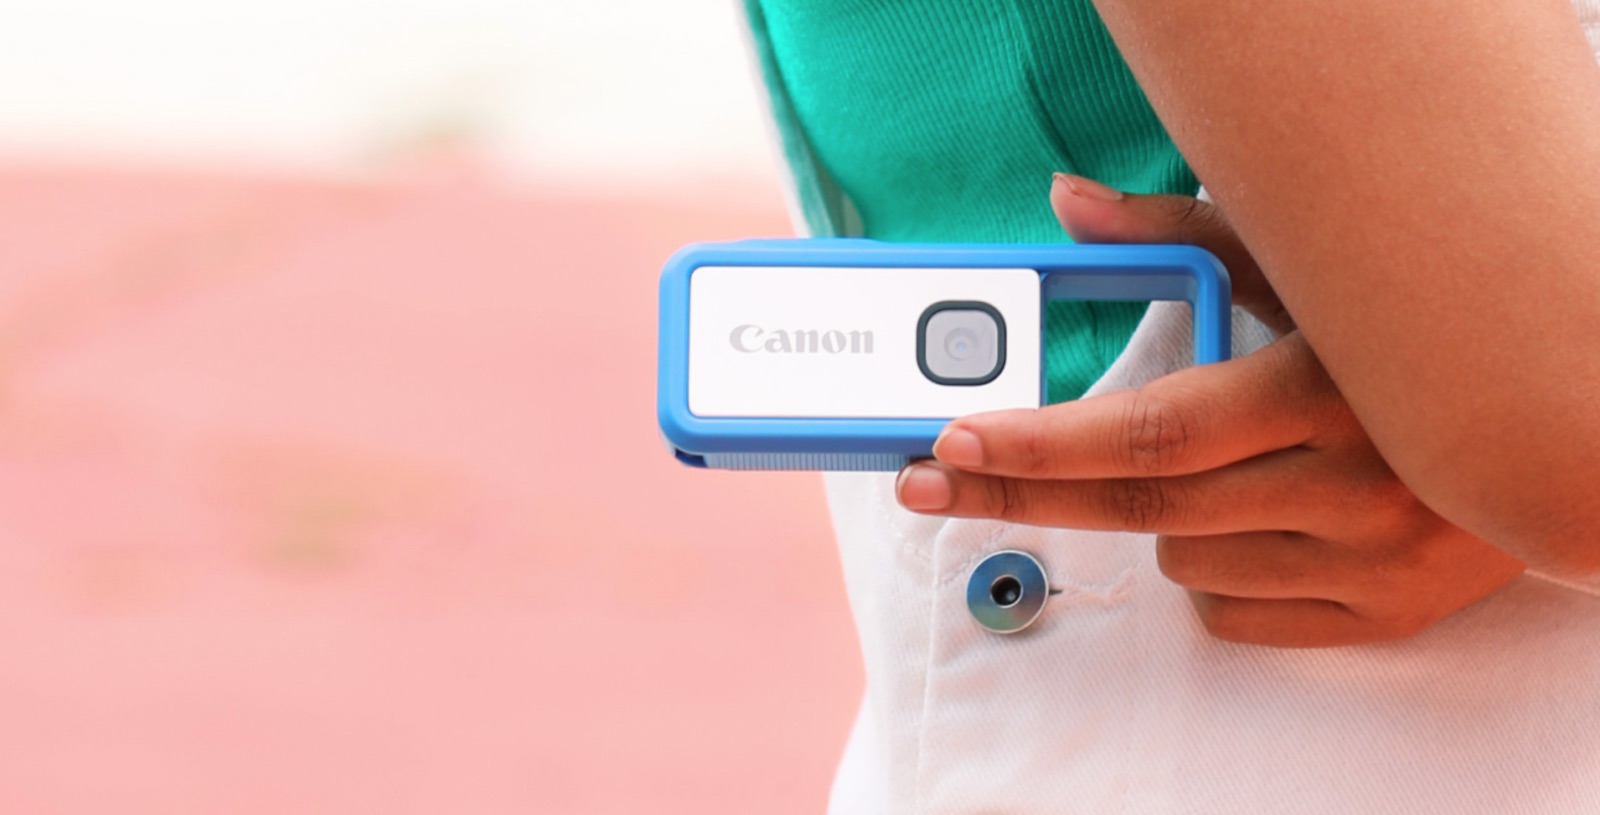 Les images ne sont pas stockées dans l'appareil mais envoyées dans le smartphone qu'on peut garder au fond de son sac ou de sa poche. © Canon